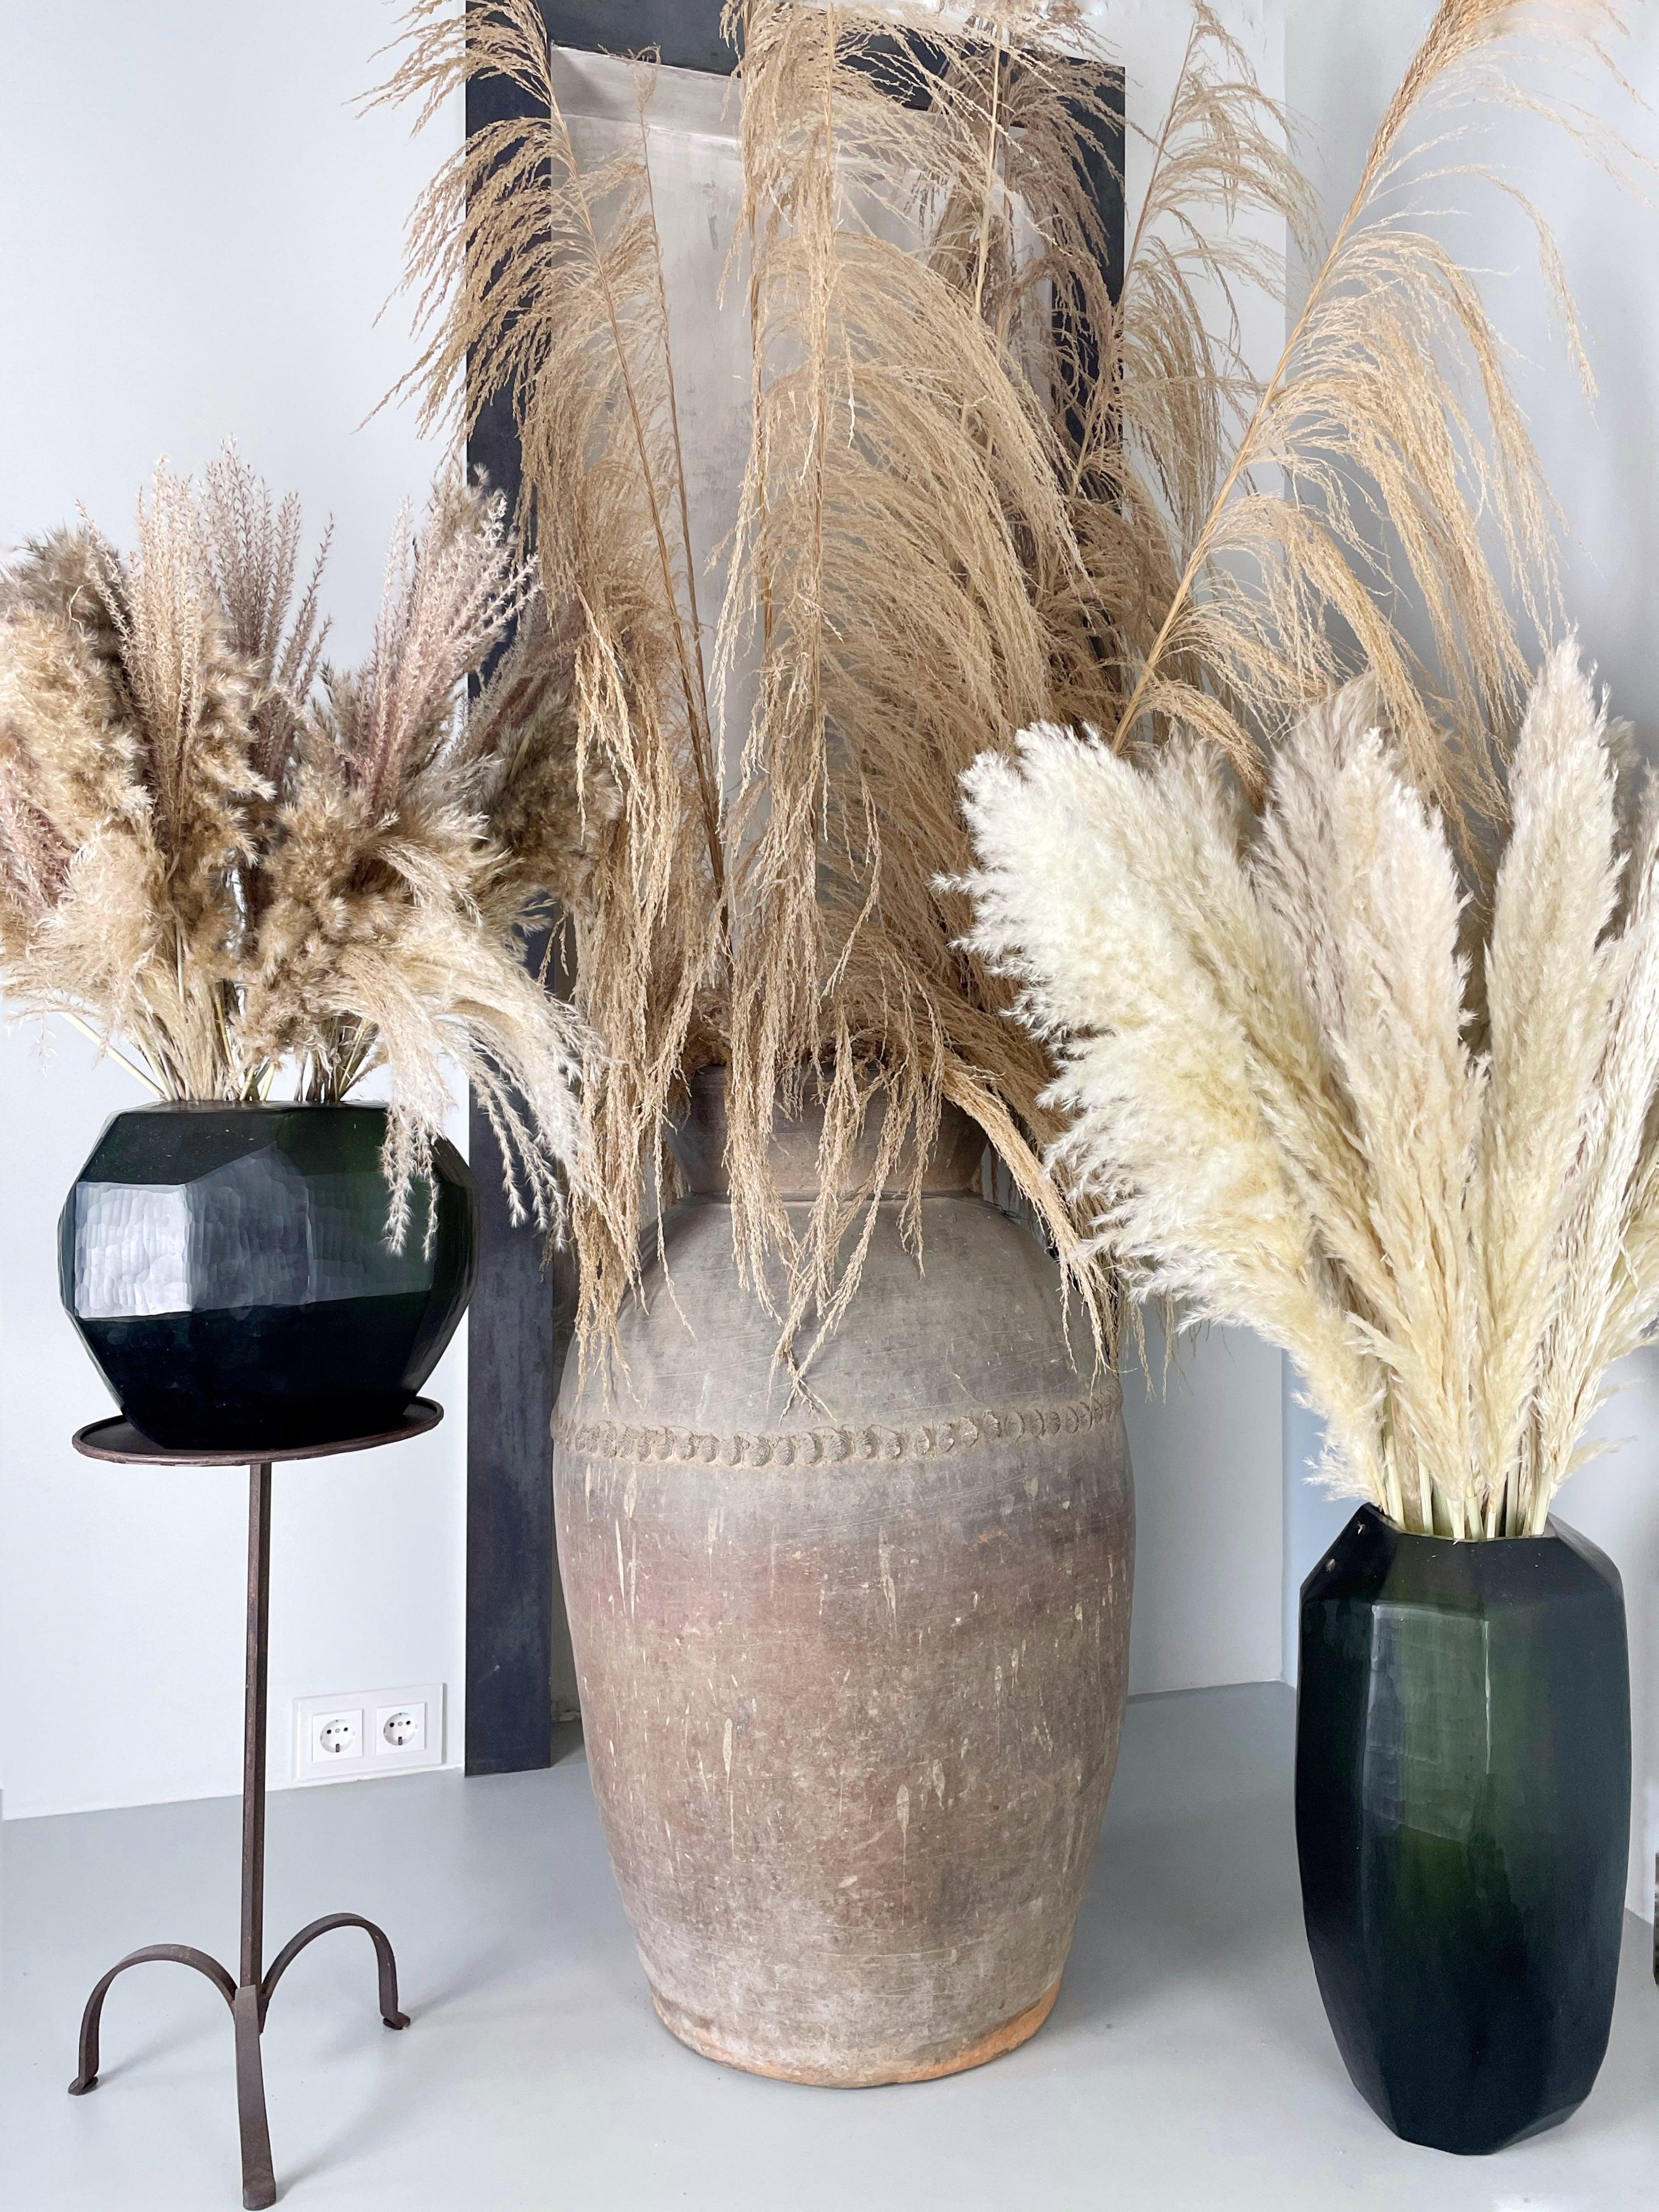 Preserved Pampas Grass Bunch  Grass decor, Black vase, Pampas grass decor